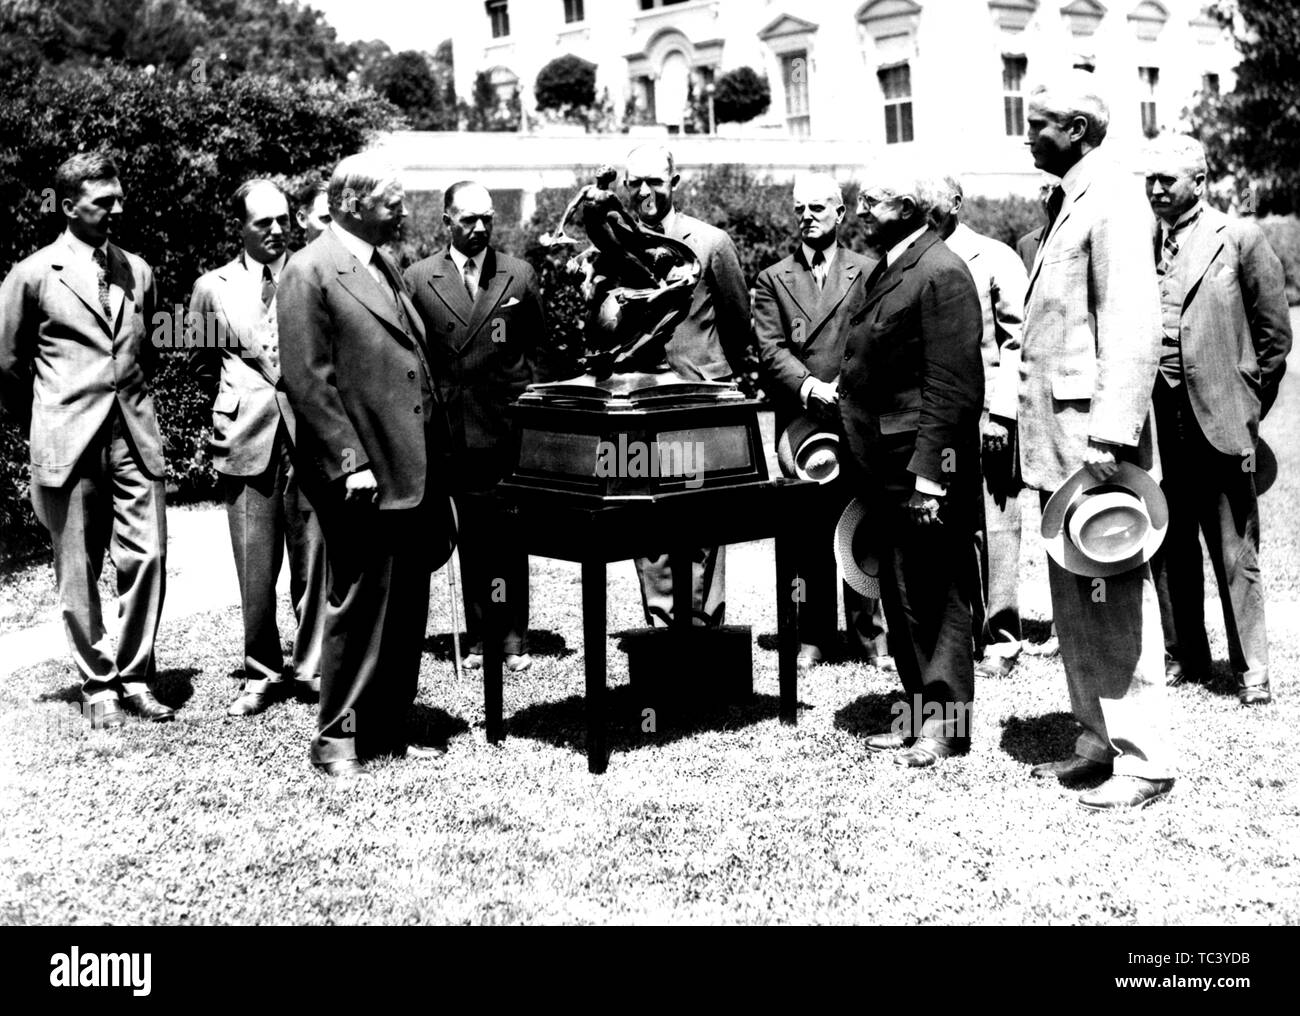 Le président Herbert Hoover présente le trophée Collier au président de la NACA Joseph Ames, 10 avril 1929. Droit avec la permission de la National Aeronautics and Space Administration (NASA). () Banque D'Images